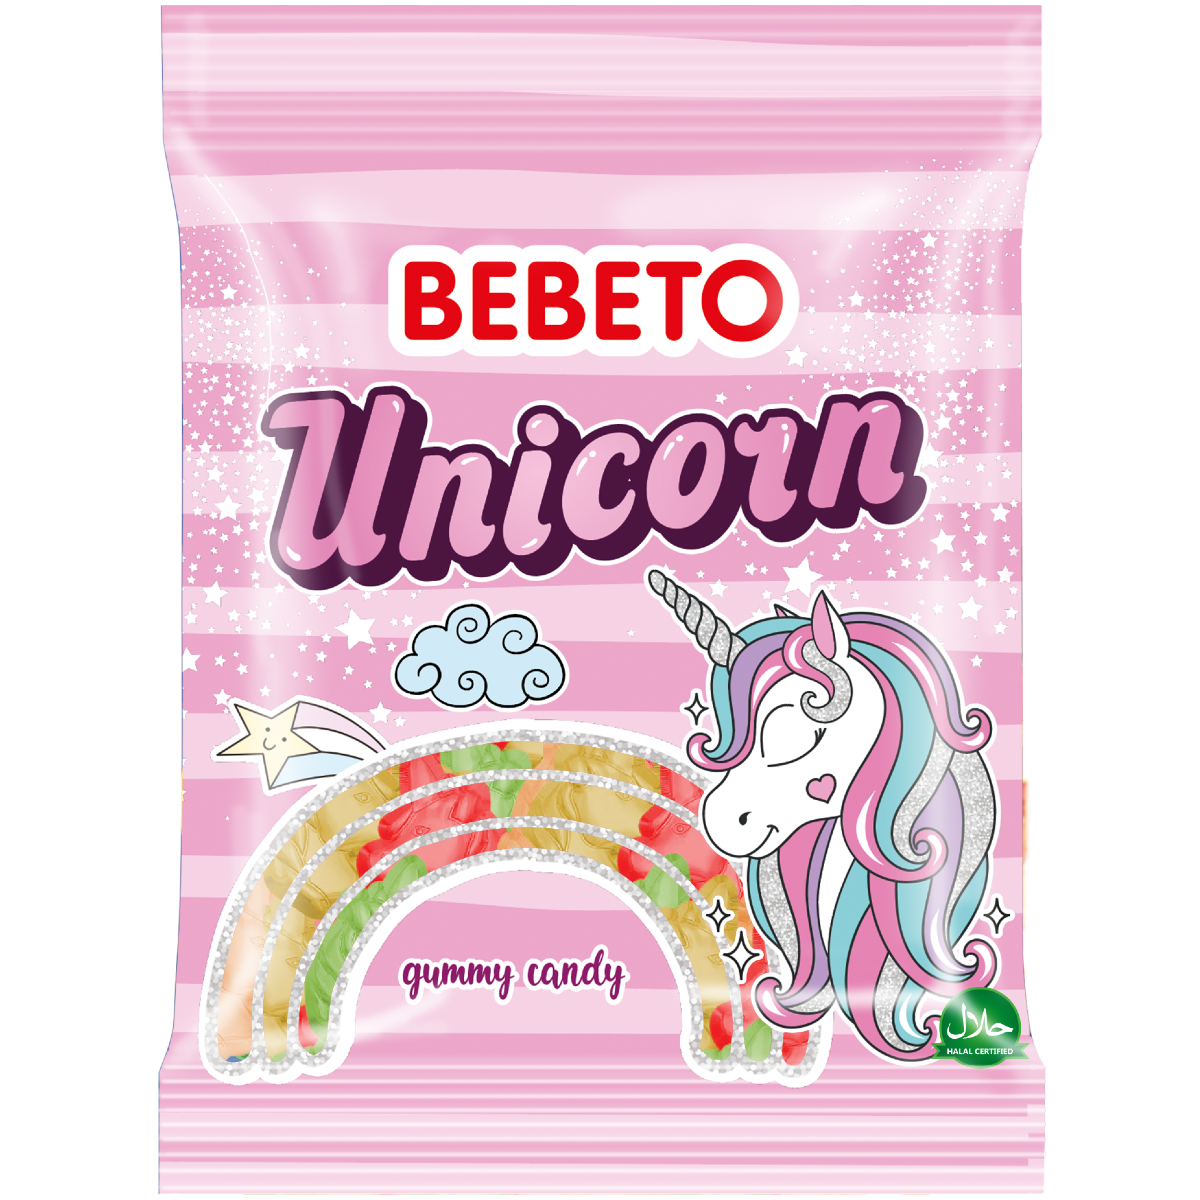 BEBETO Unicorn